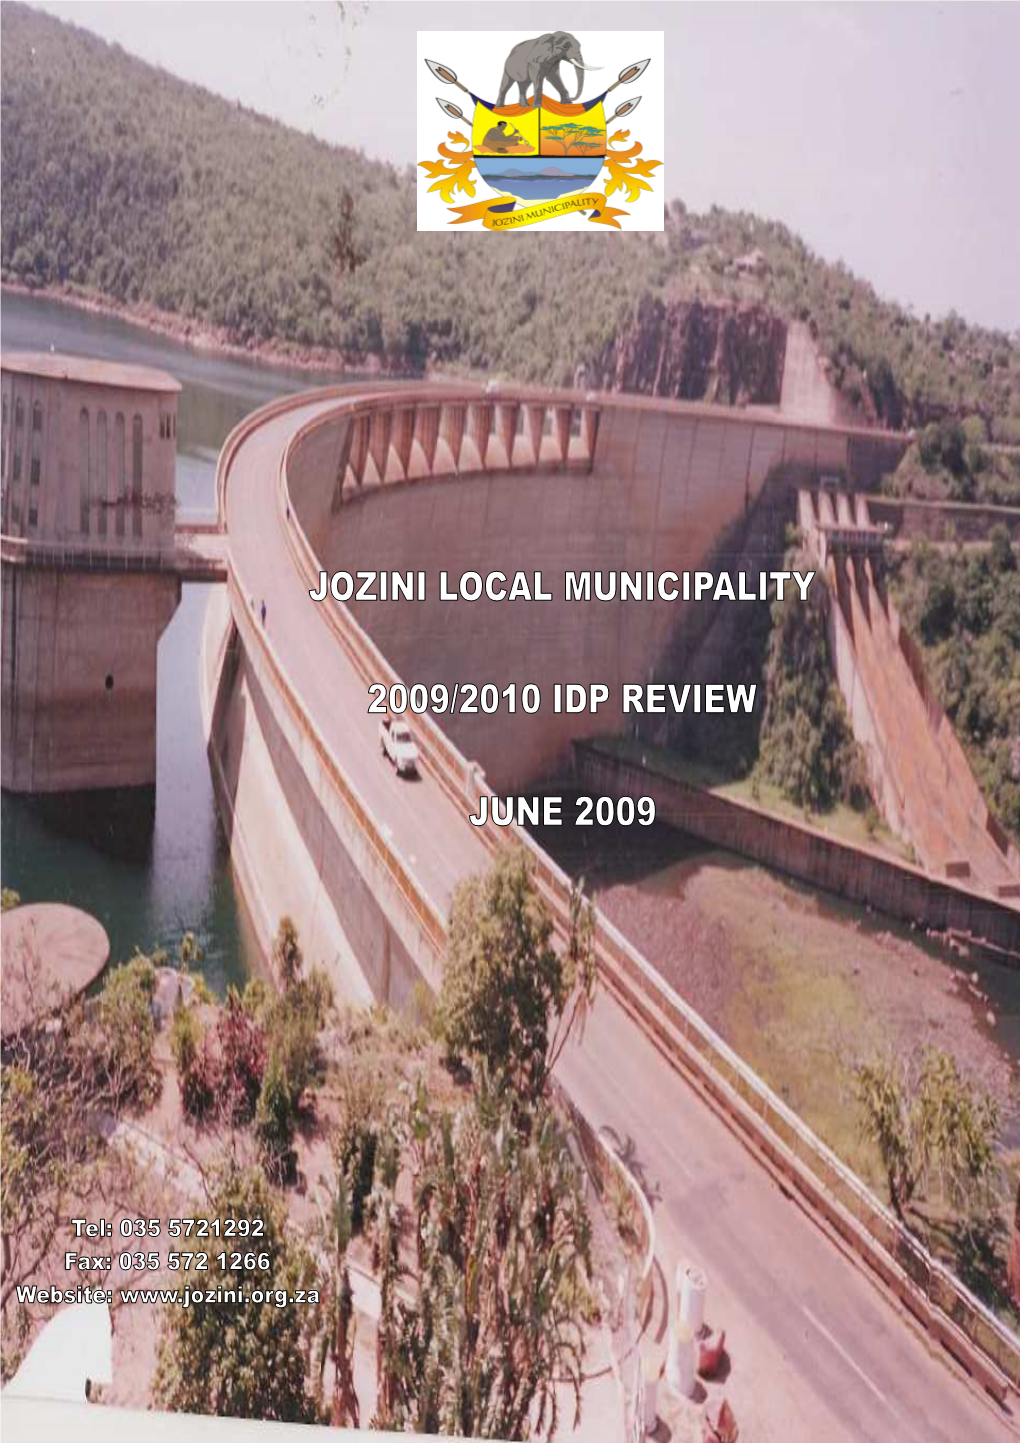 Jozini Final IDP 2009 2010